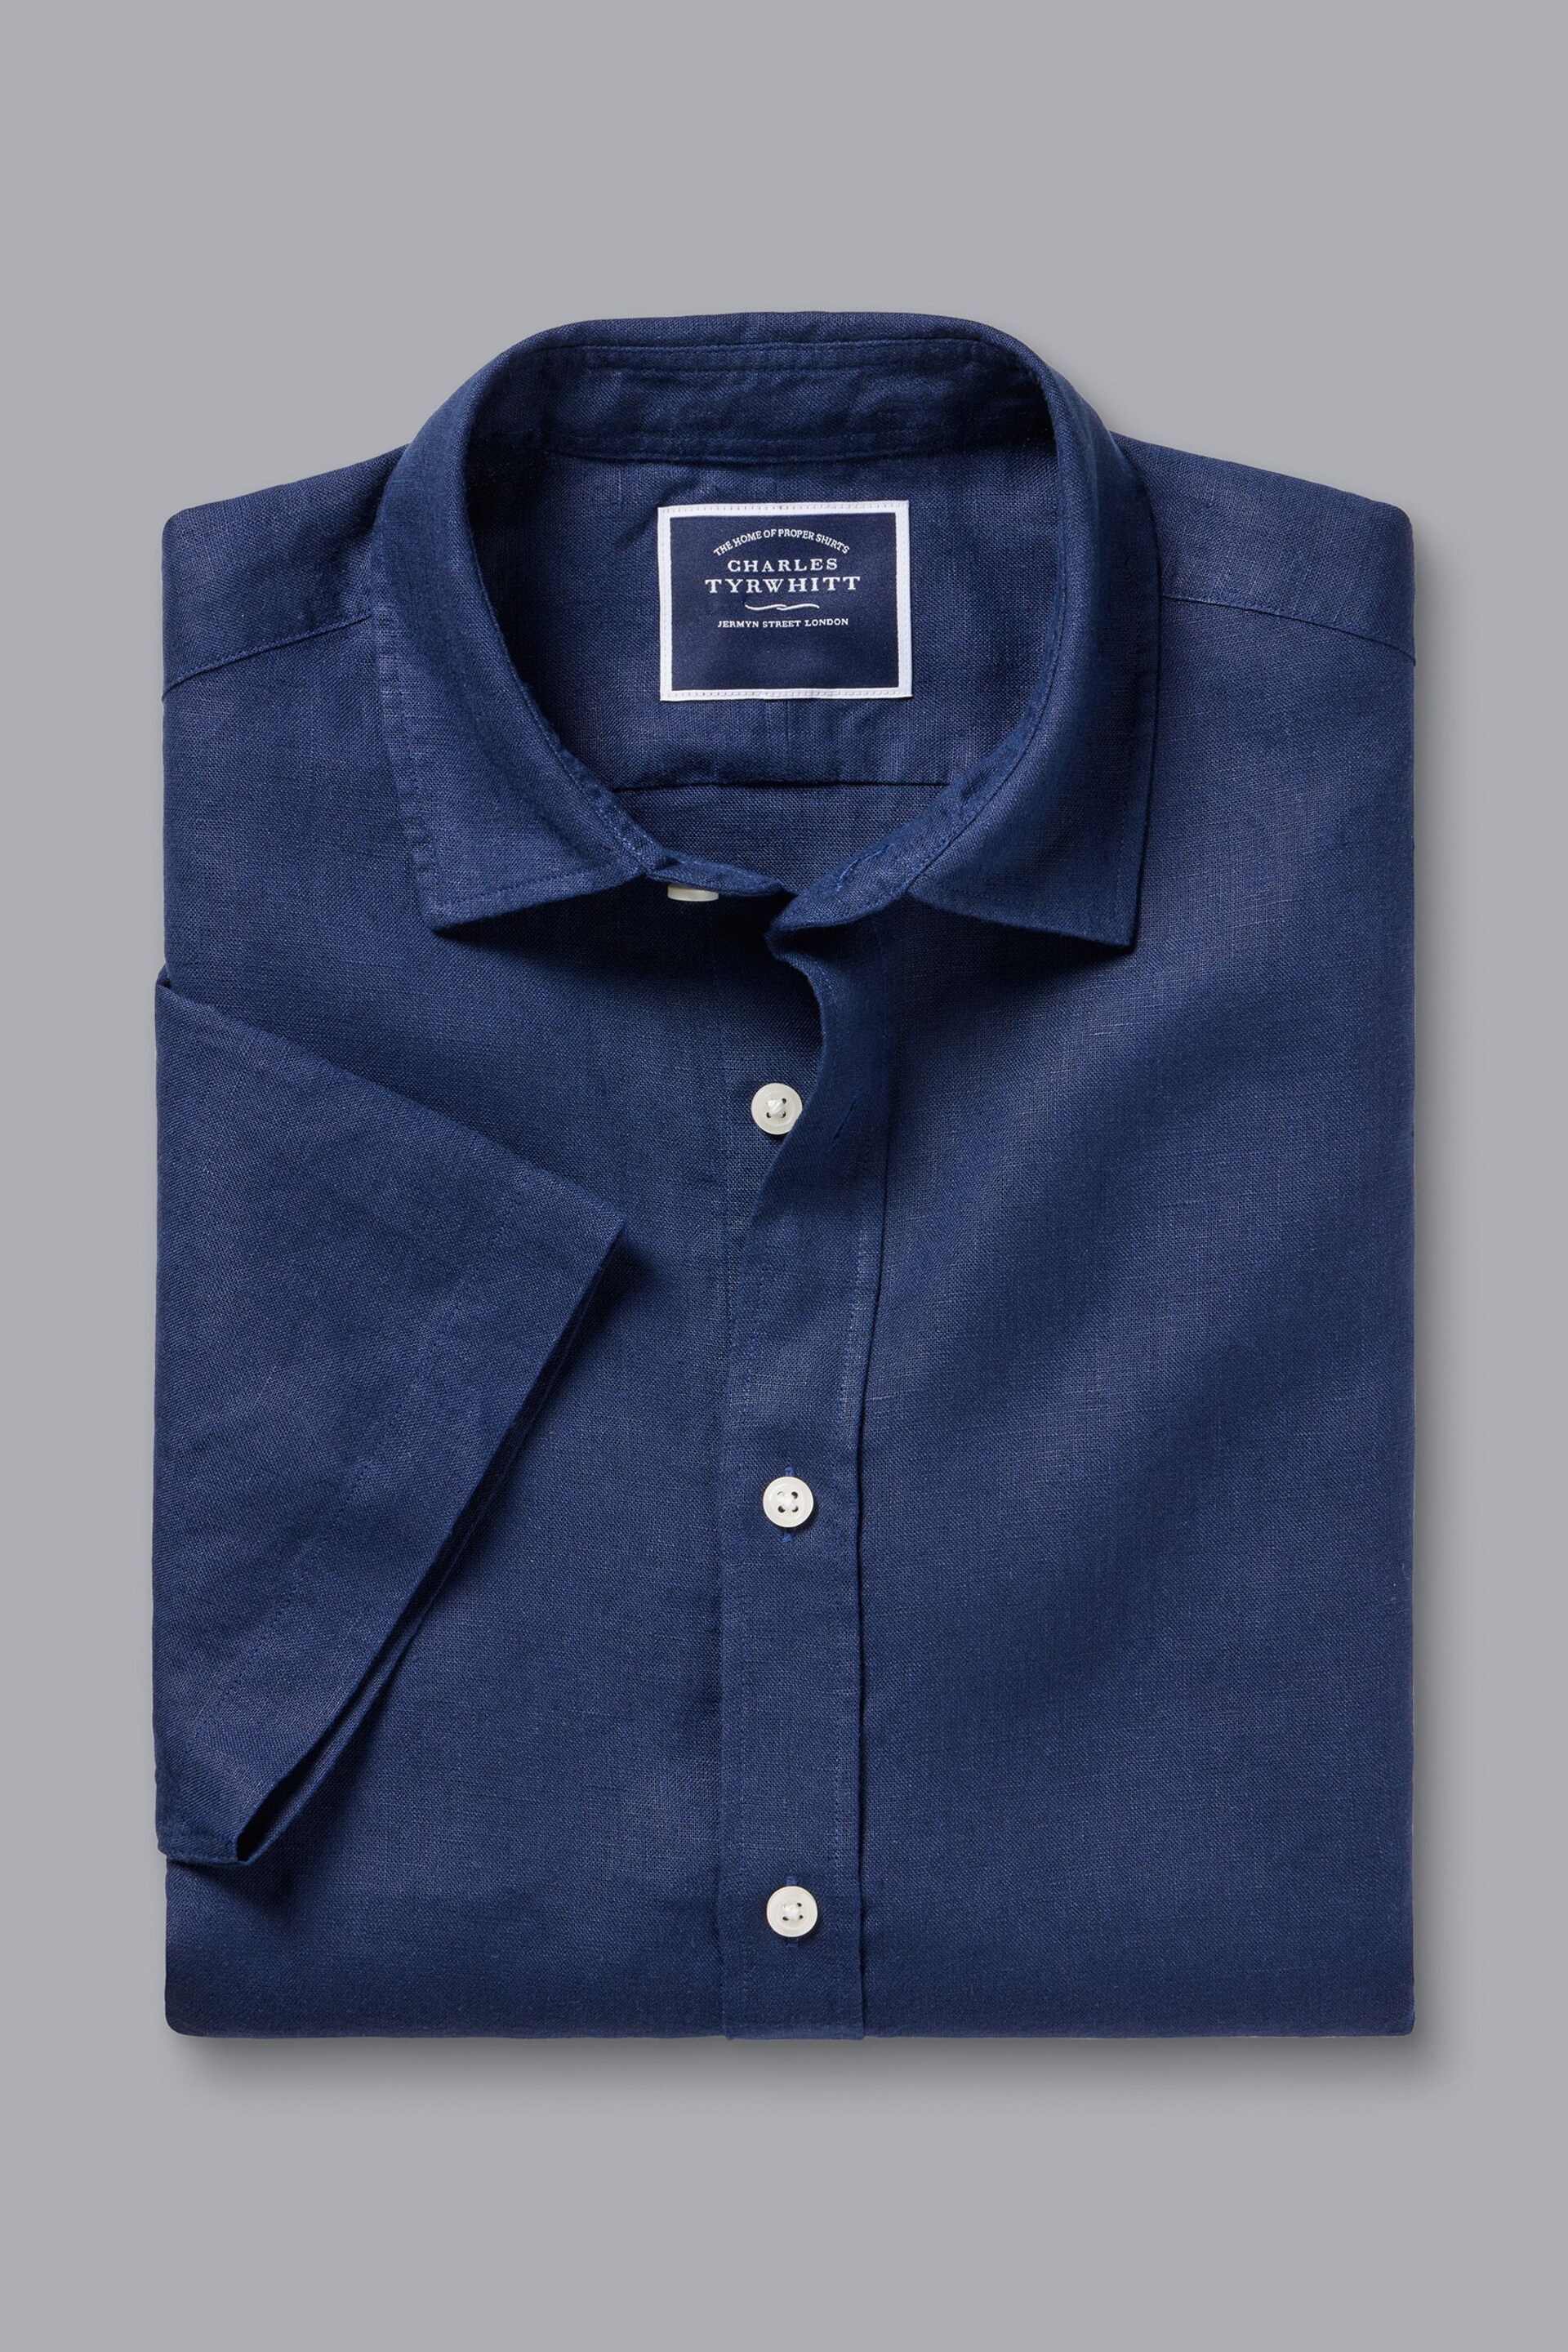 Charles Tyrwhitt Blue Slim Fit Plain Short Sleeve Pure Linen Full Sleeves Shirt - Image 4 of 5